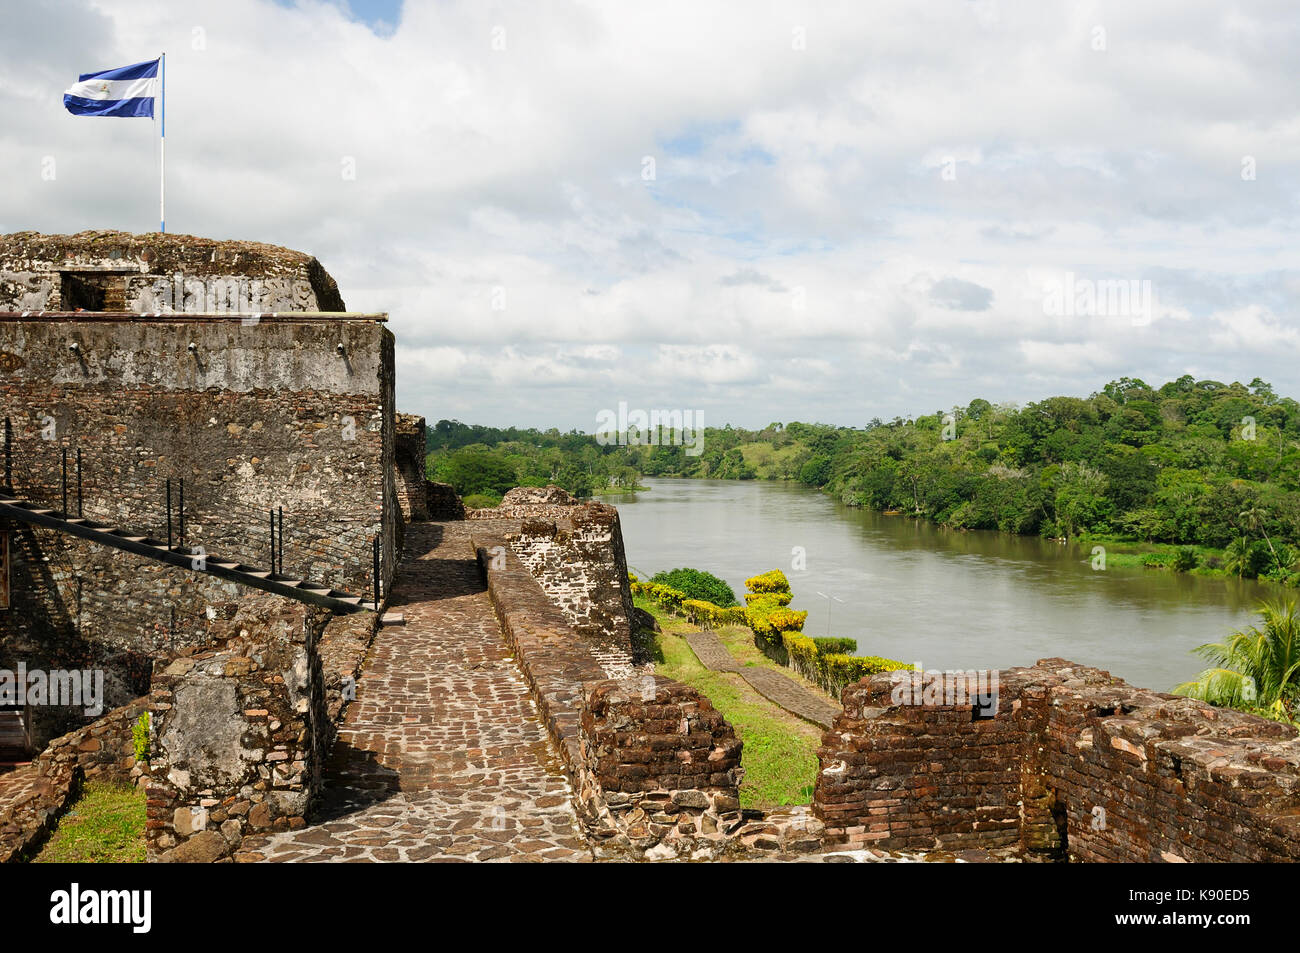 Nicaragua, spagnolo fortificazione di difesa in di El Castillo su una banca del fiume san juan per difendere l'accesso alla città di Grenada contro i pirati. Foto Stock